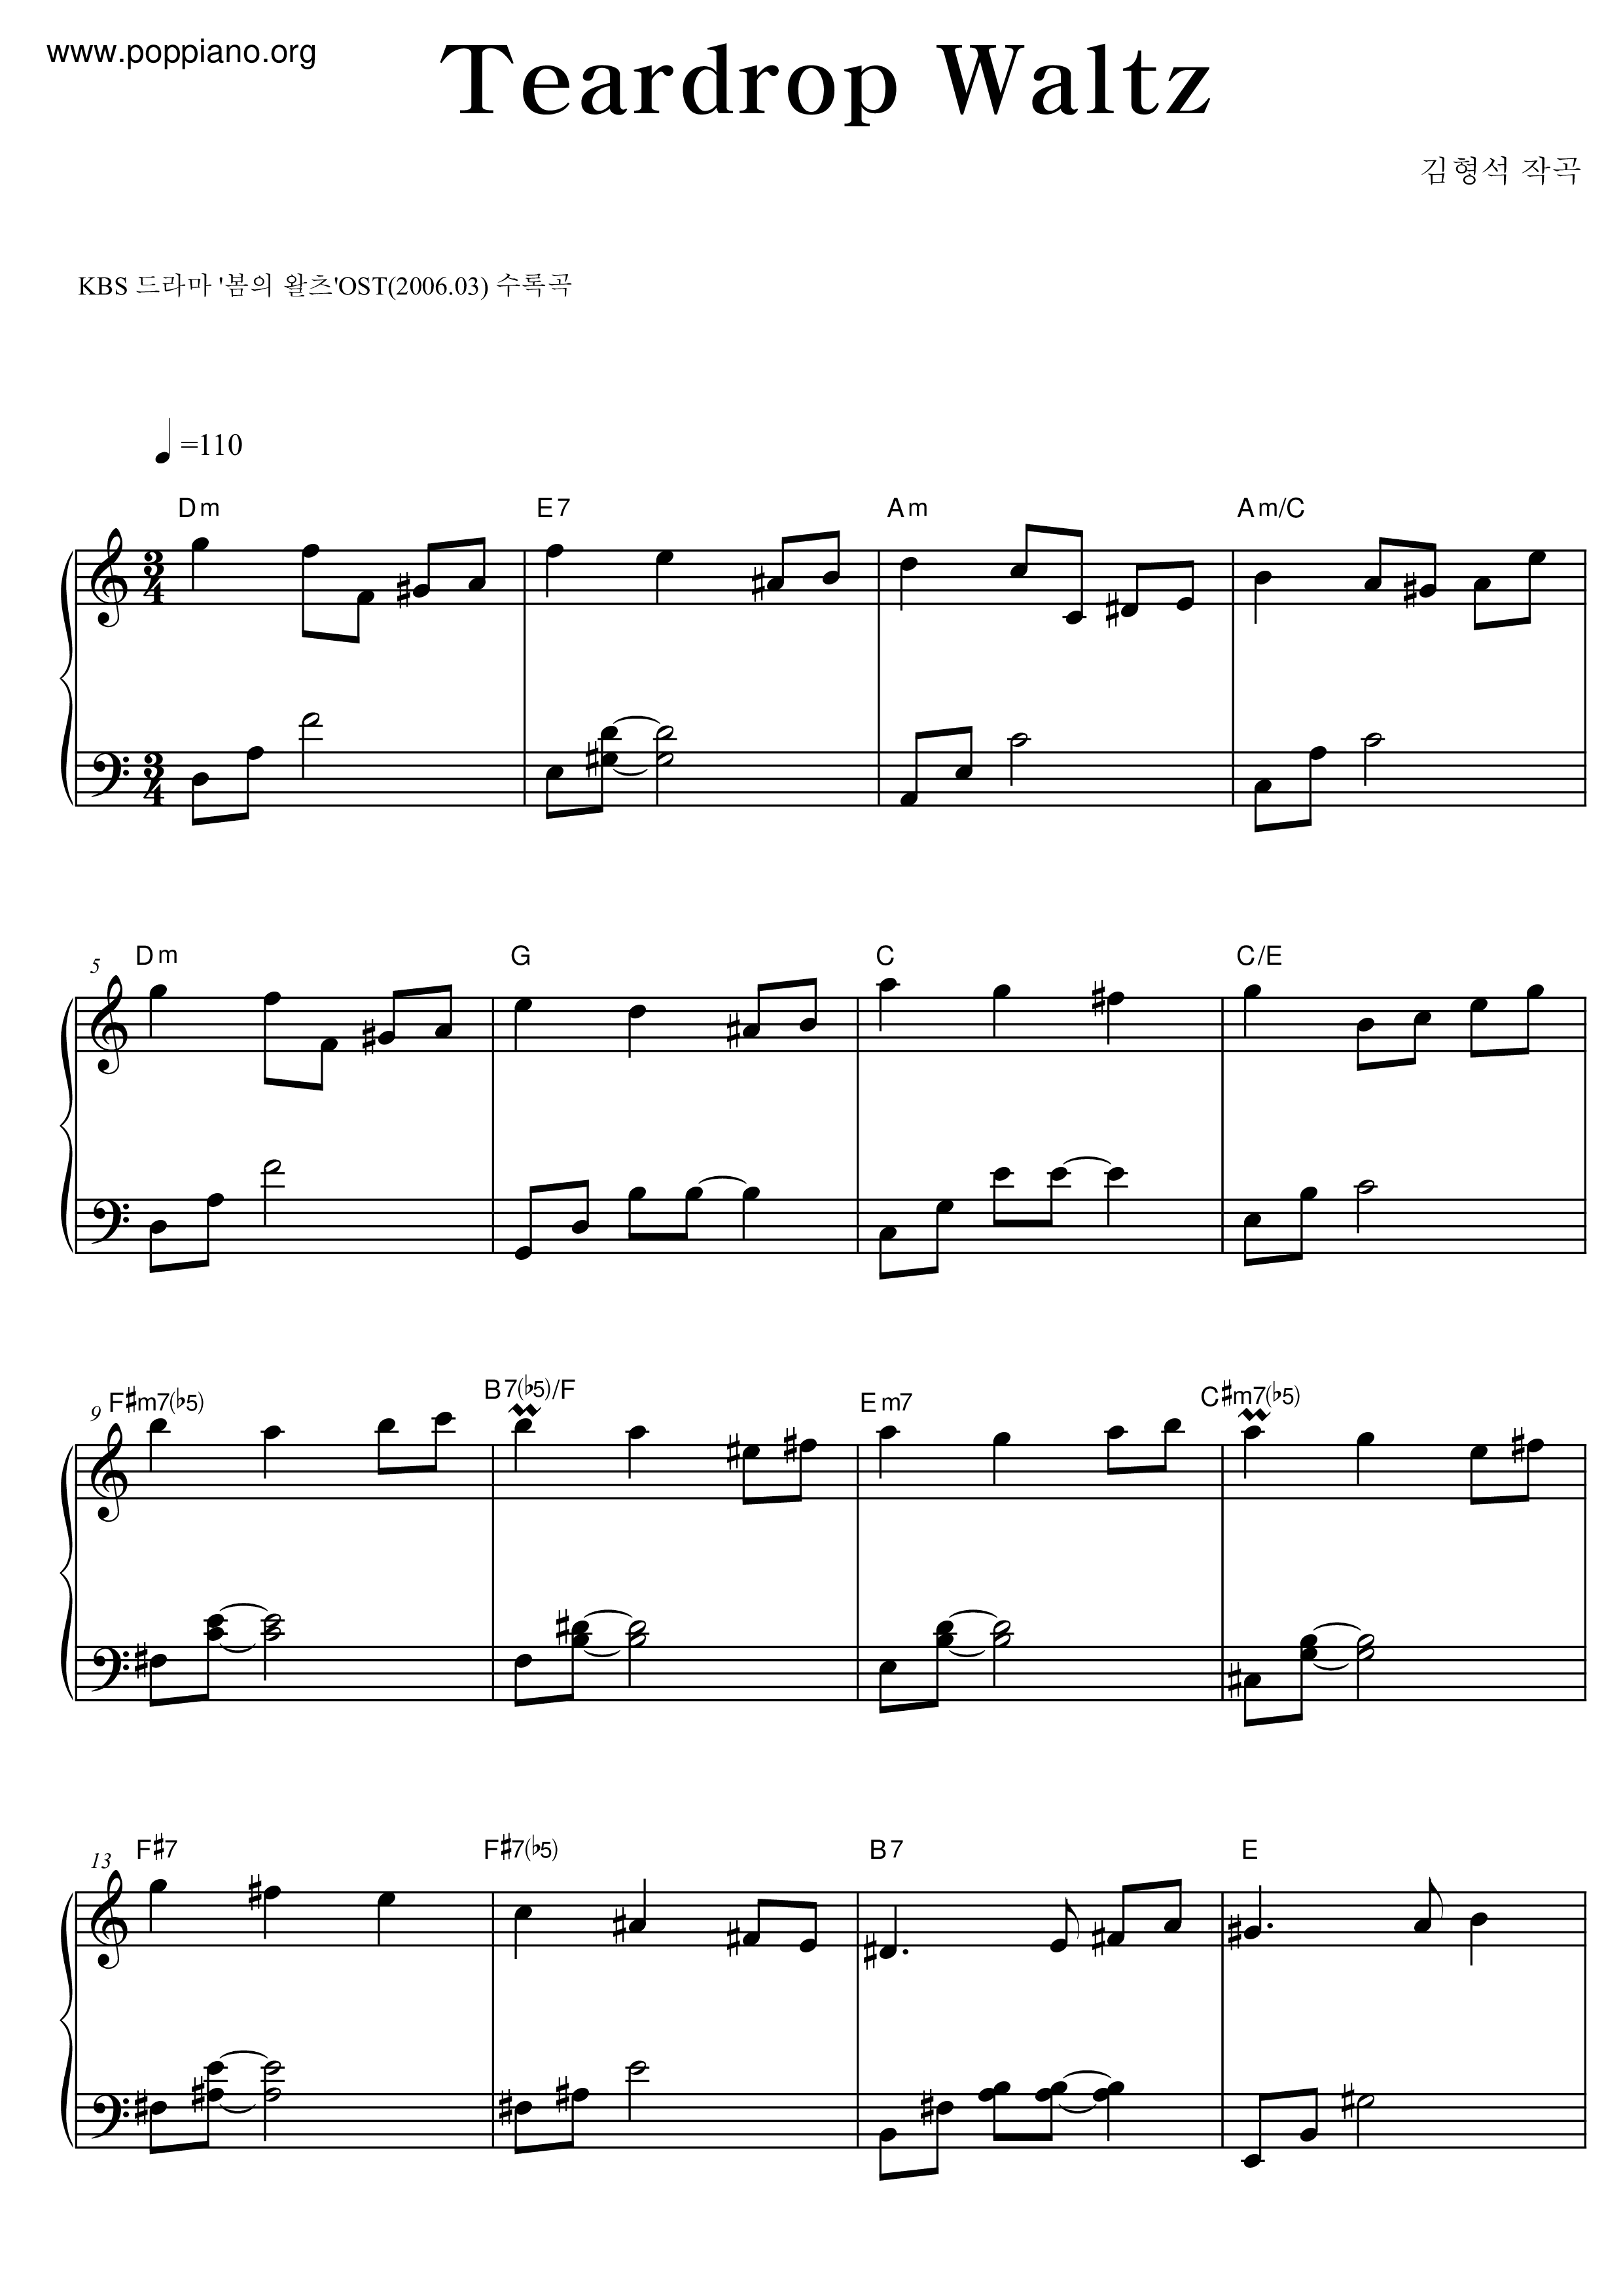 Spring Waltz - Teardrop Waltz Score